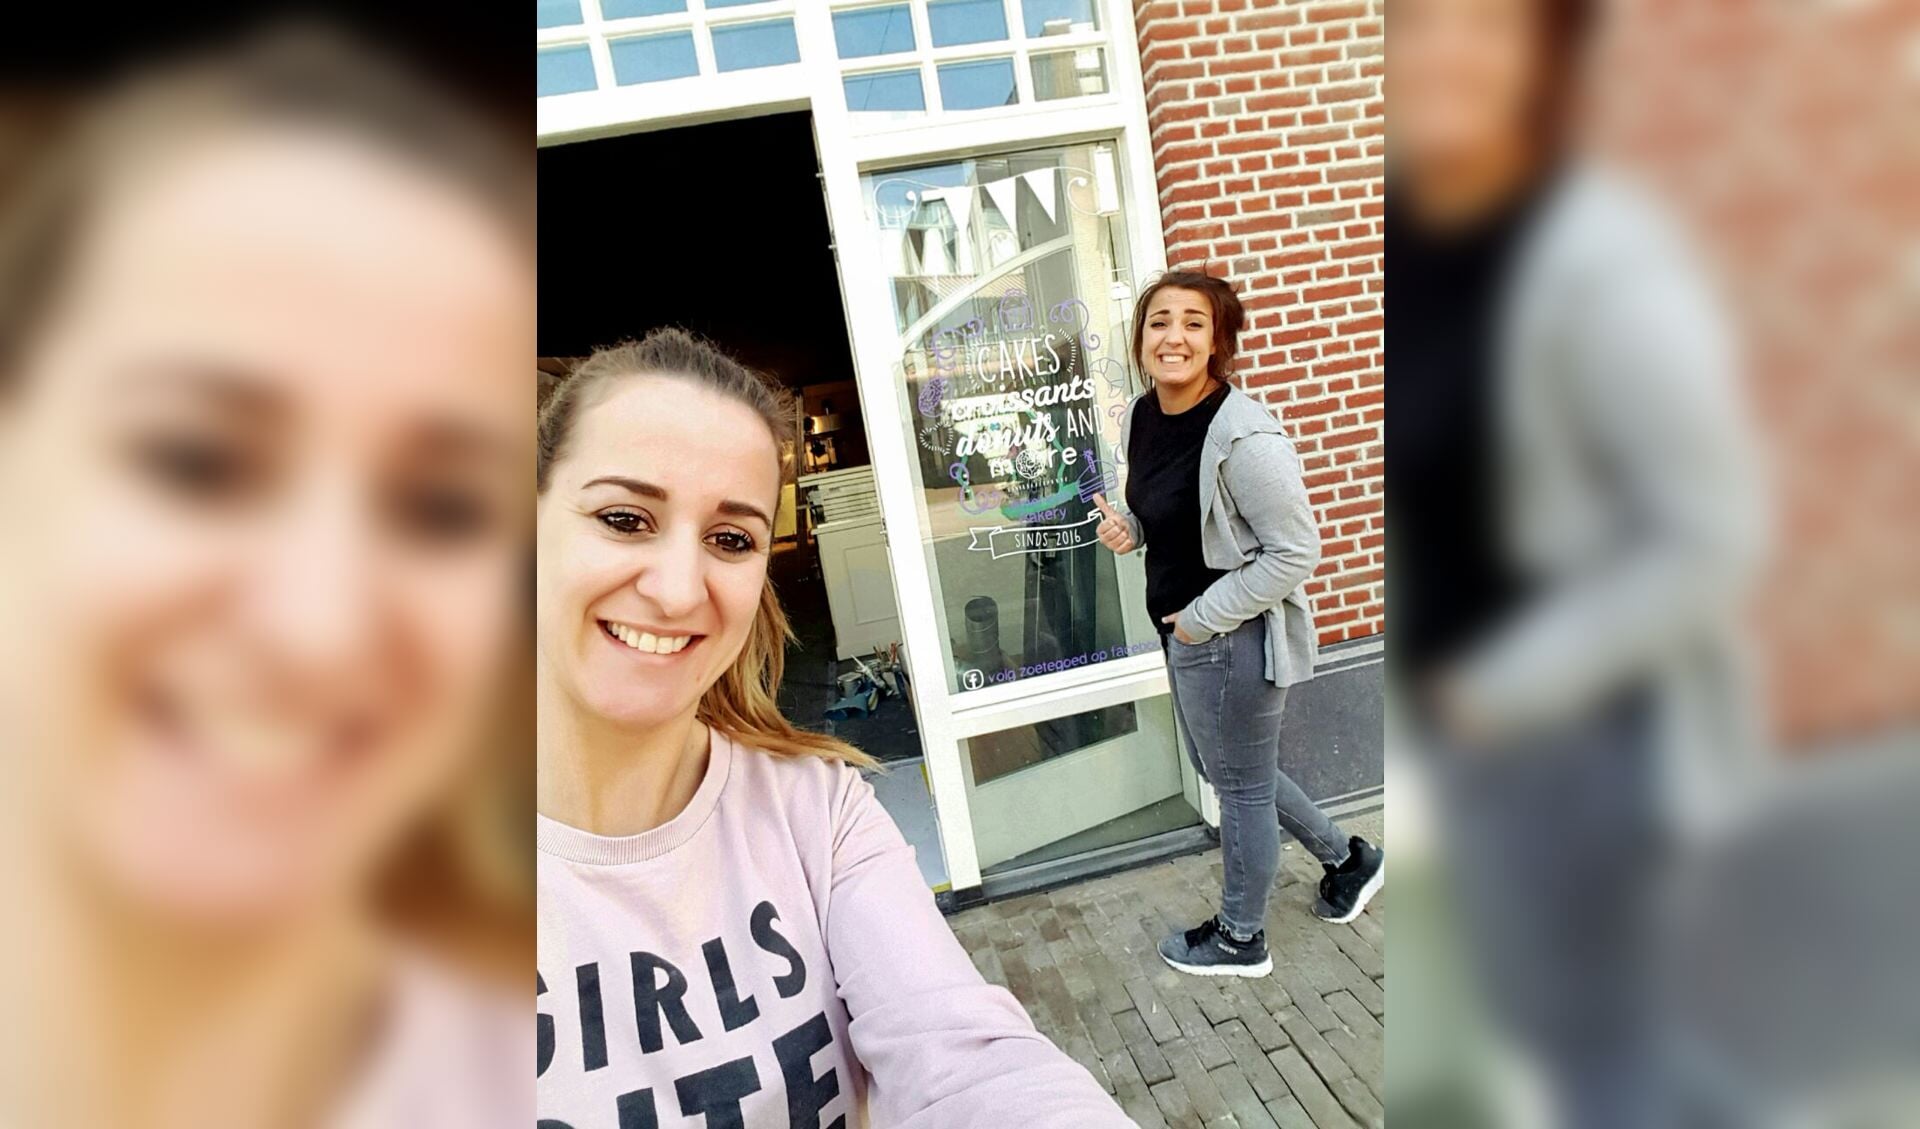 De zussen Inge (links) en Mariëlle (rechts) openen zaterdag hun winkel Zoetegoed.